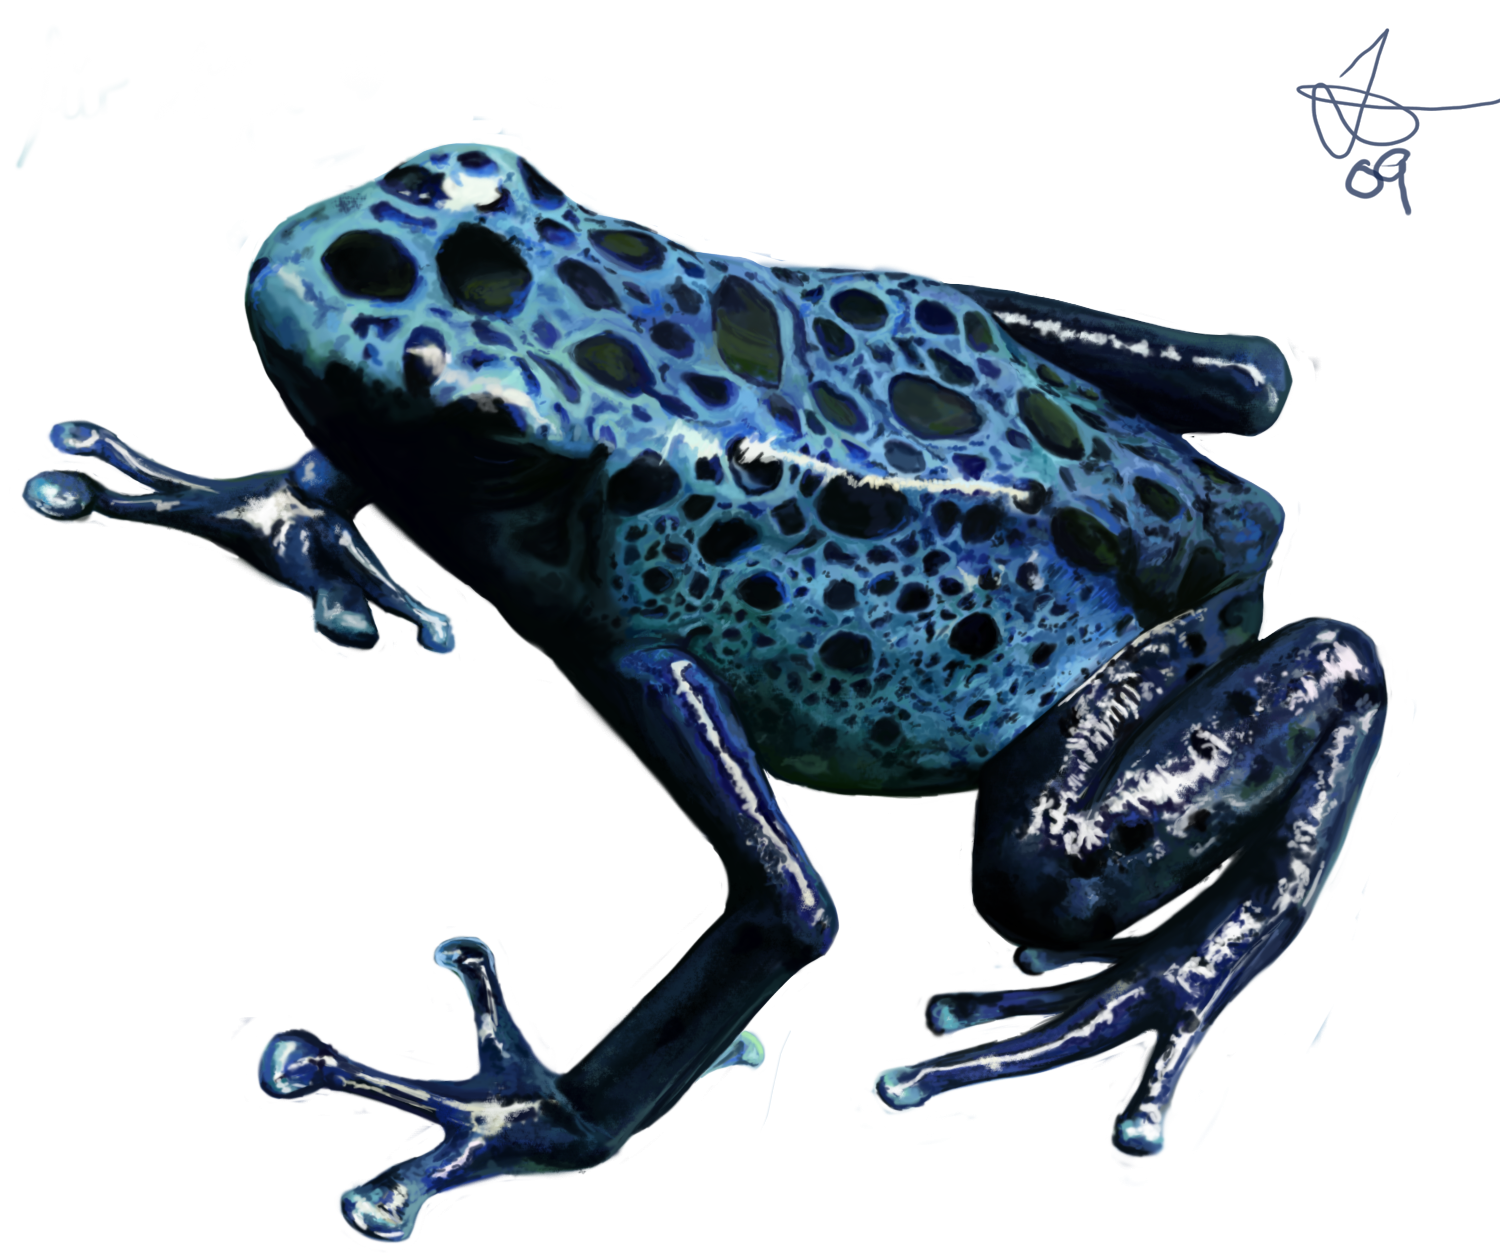 Frog pour spoon copy